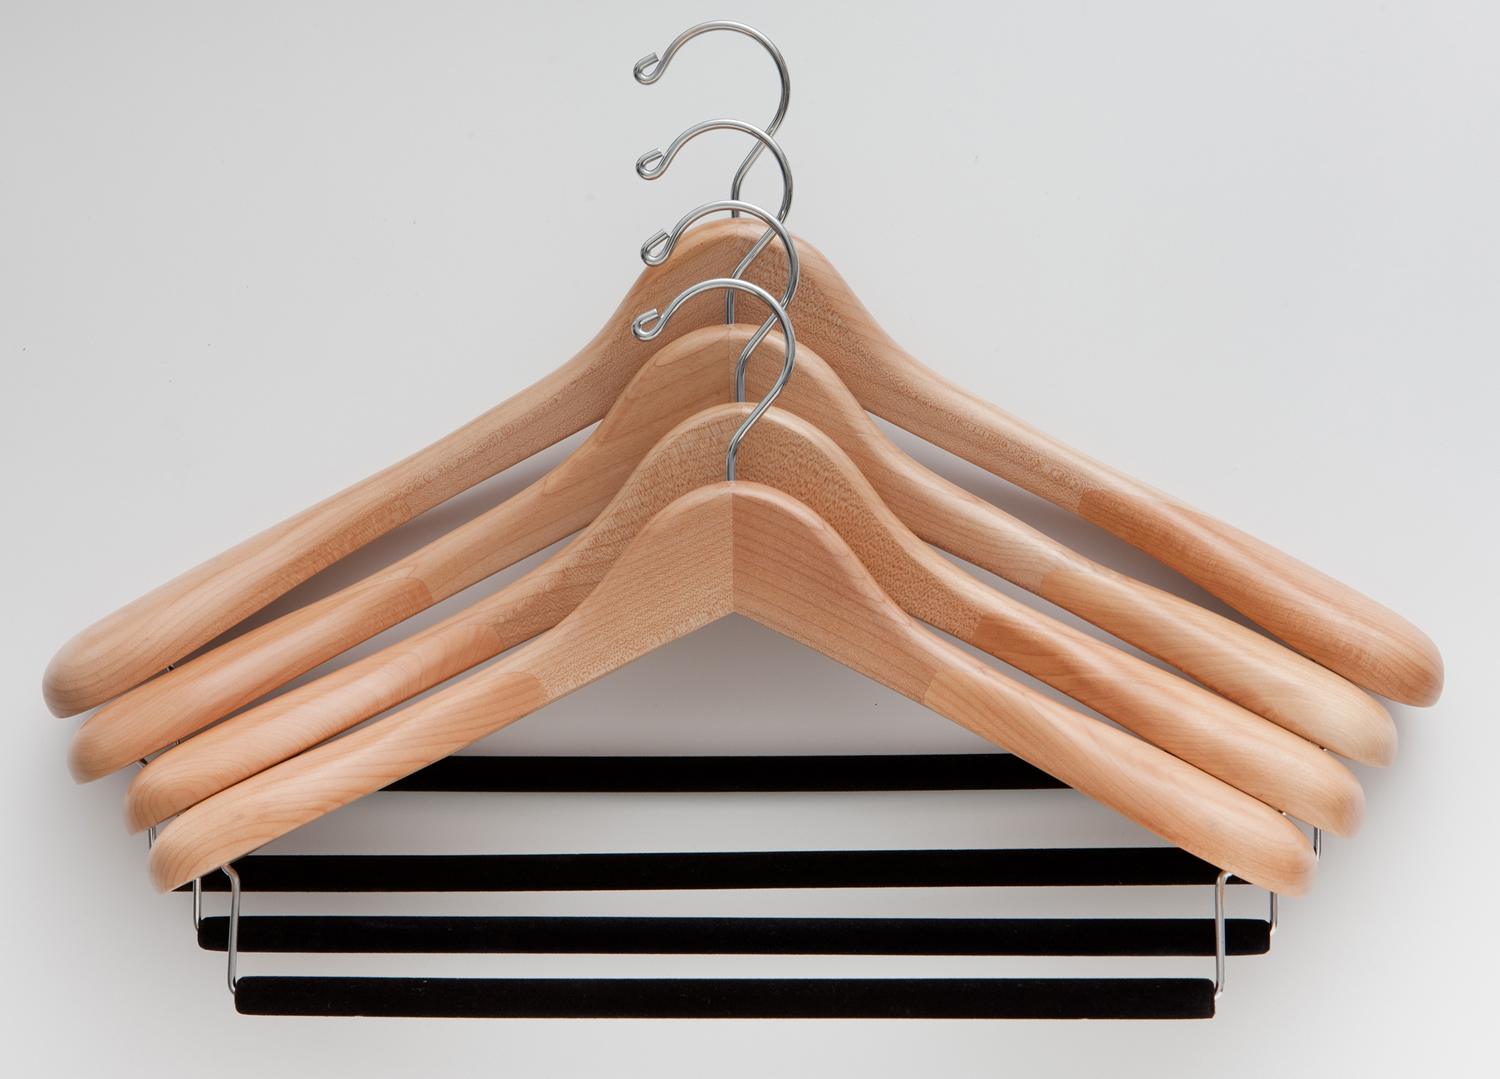 http://4.bp.blogspot.com/-lBfVh49Vu6U/UEk0WwjLC4I/AAAAAAAAGTg/EqlVakSlXok/s1600/different-sizes-hangers-men-jackets-kirby-allison-hanger-project.jpg